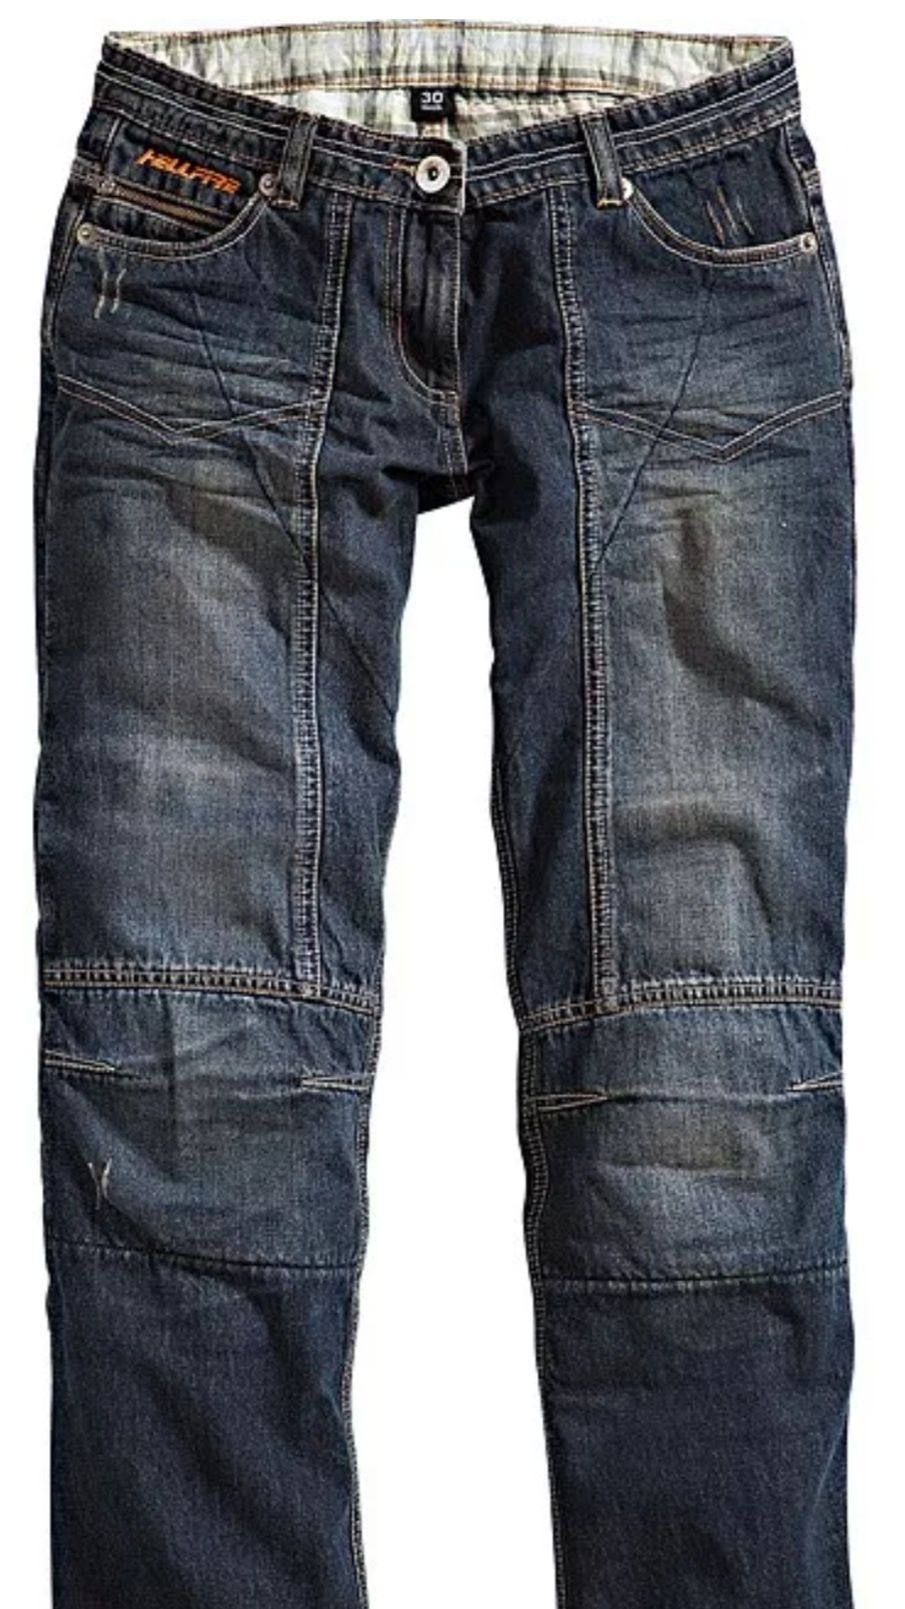 NOWE Spodnie motocyklowe XS damskie jeansy 36 jeansowe